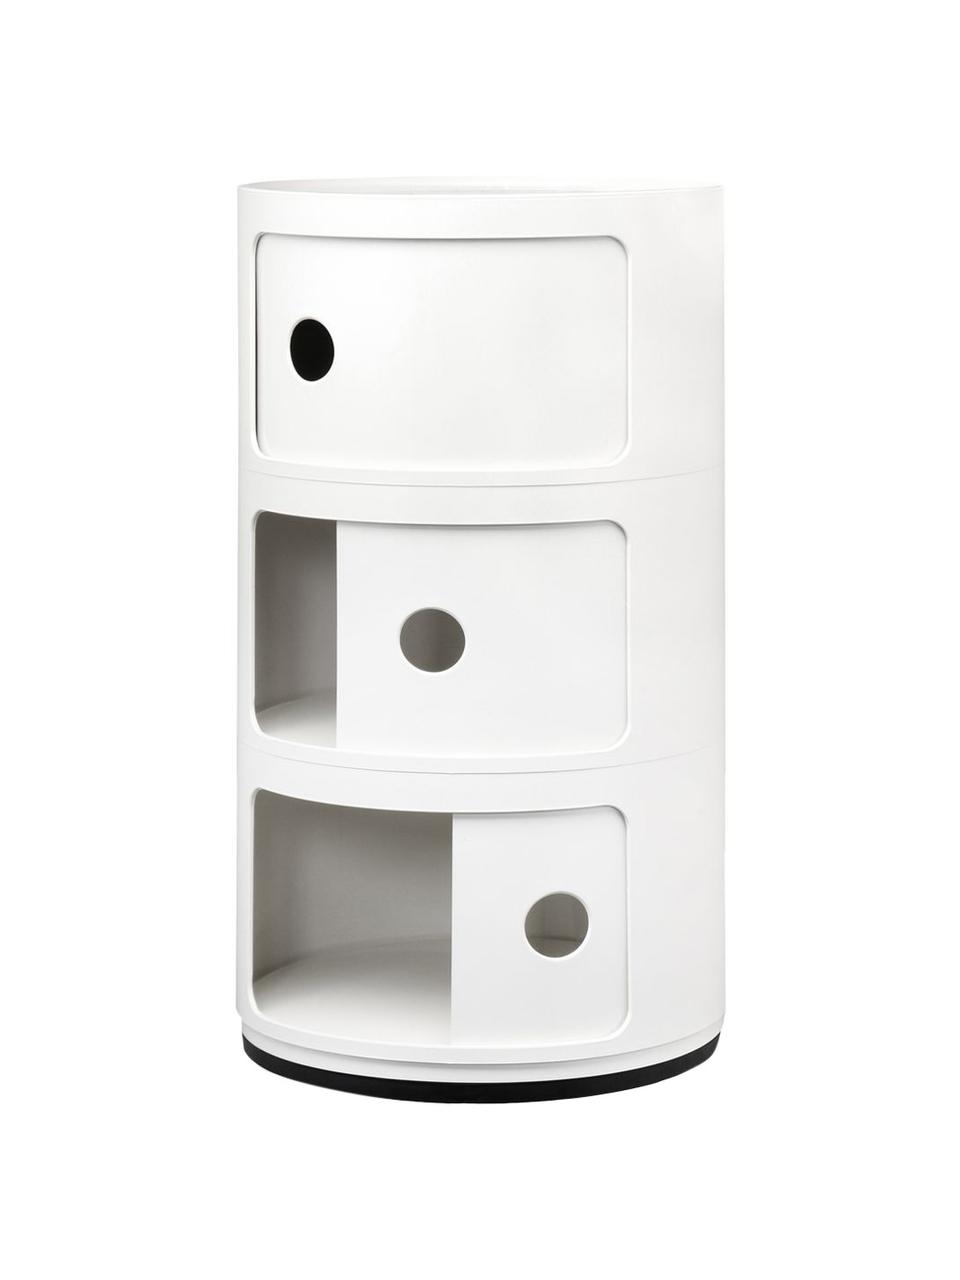 Design Container Componibili, 3 Elemente, Kunststoff (ABS), lackiert, Greenguard-zertifiziert, Weiß, glänzend, Ø 32 x H 59 cm